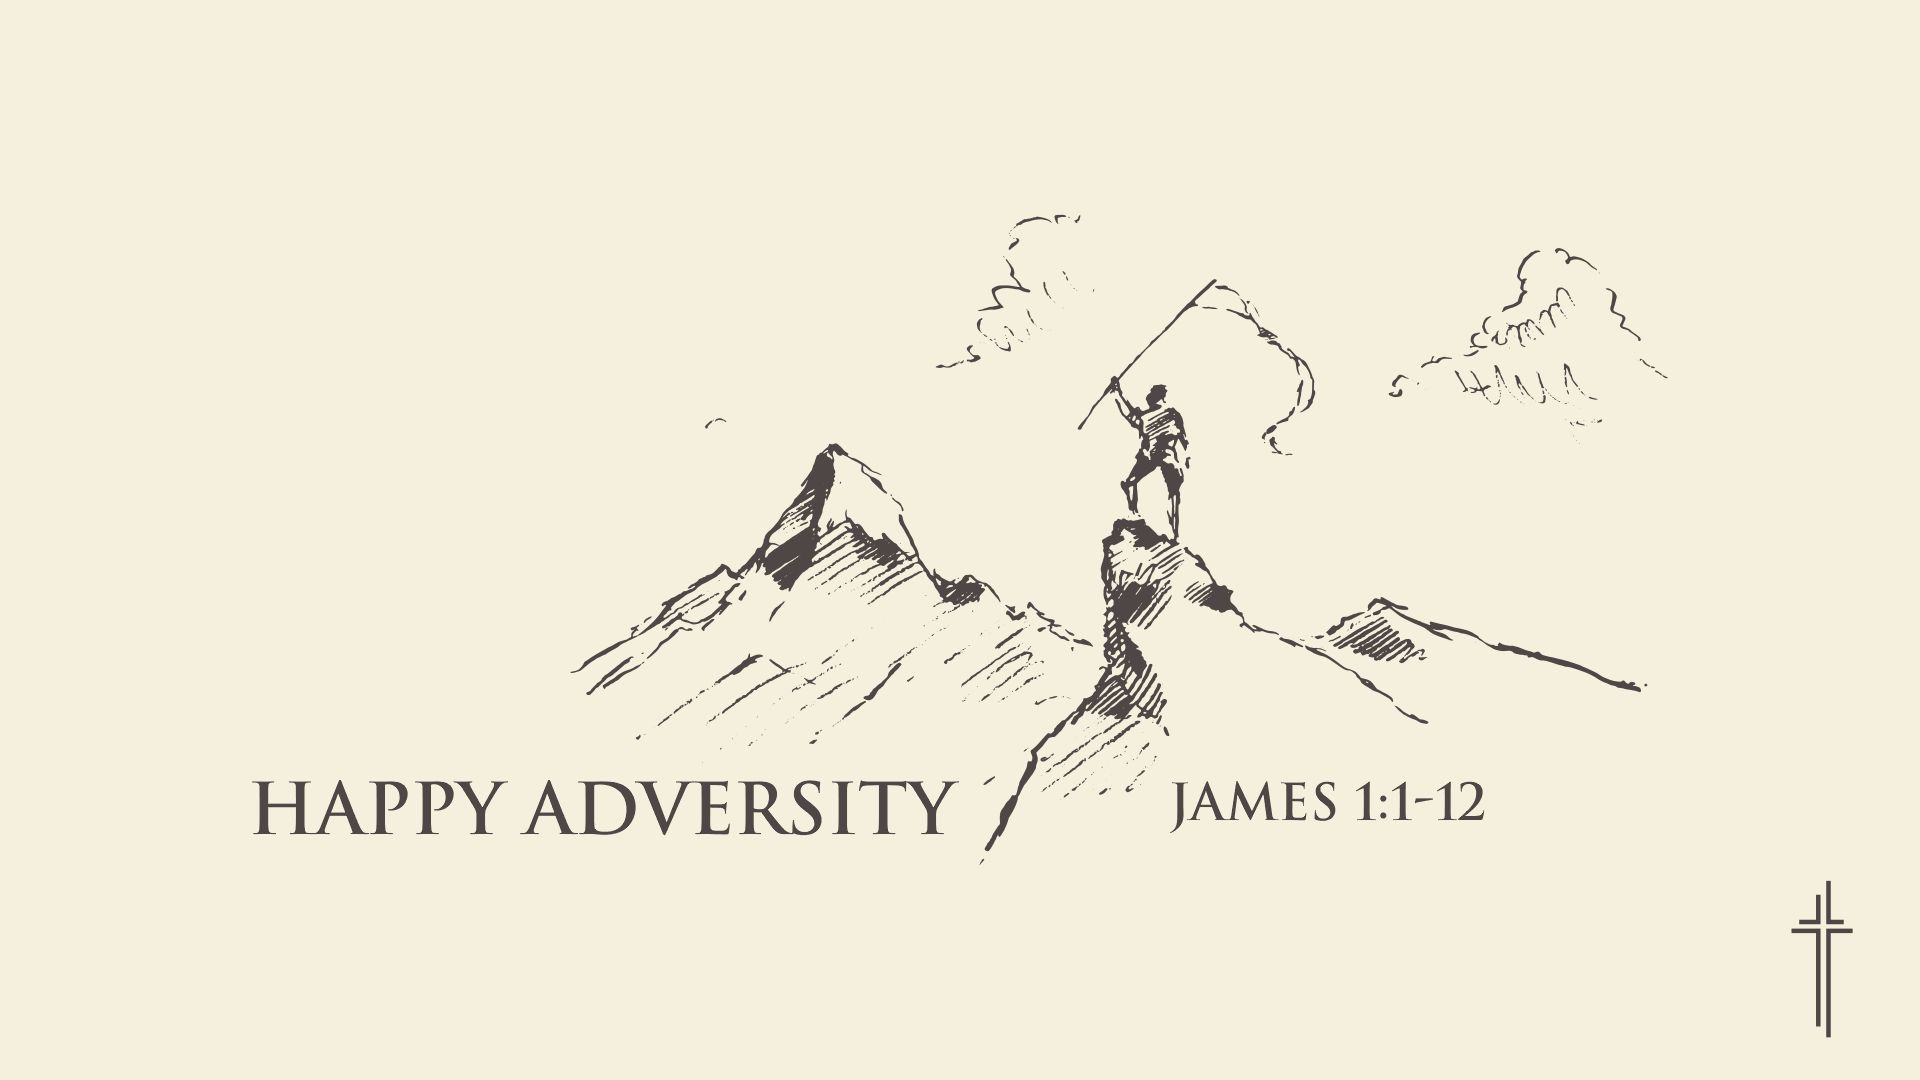 Happy Adversity!